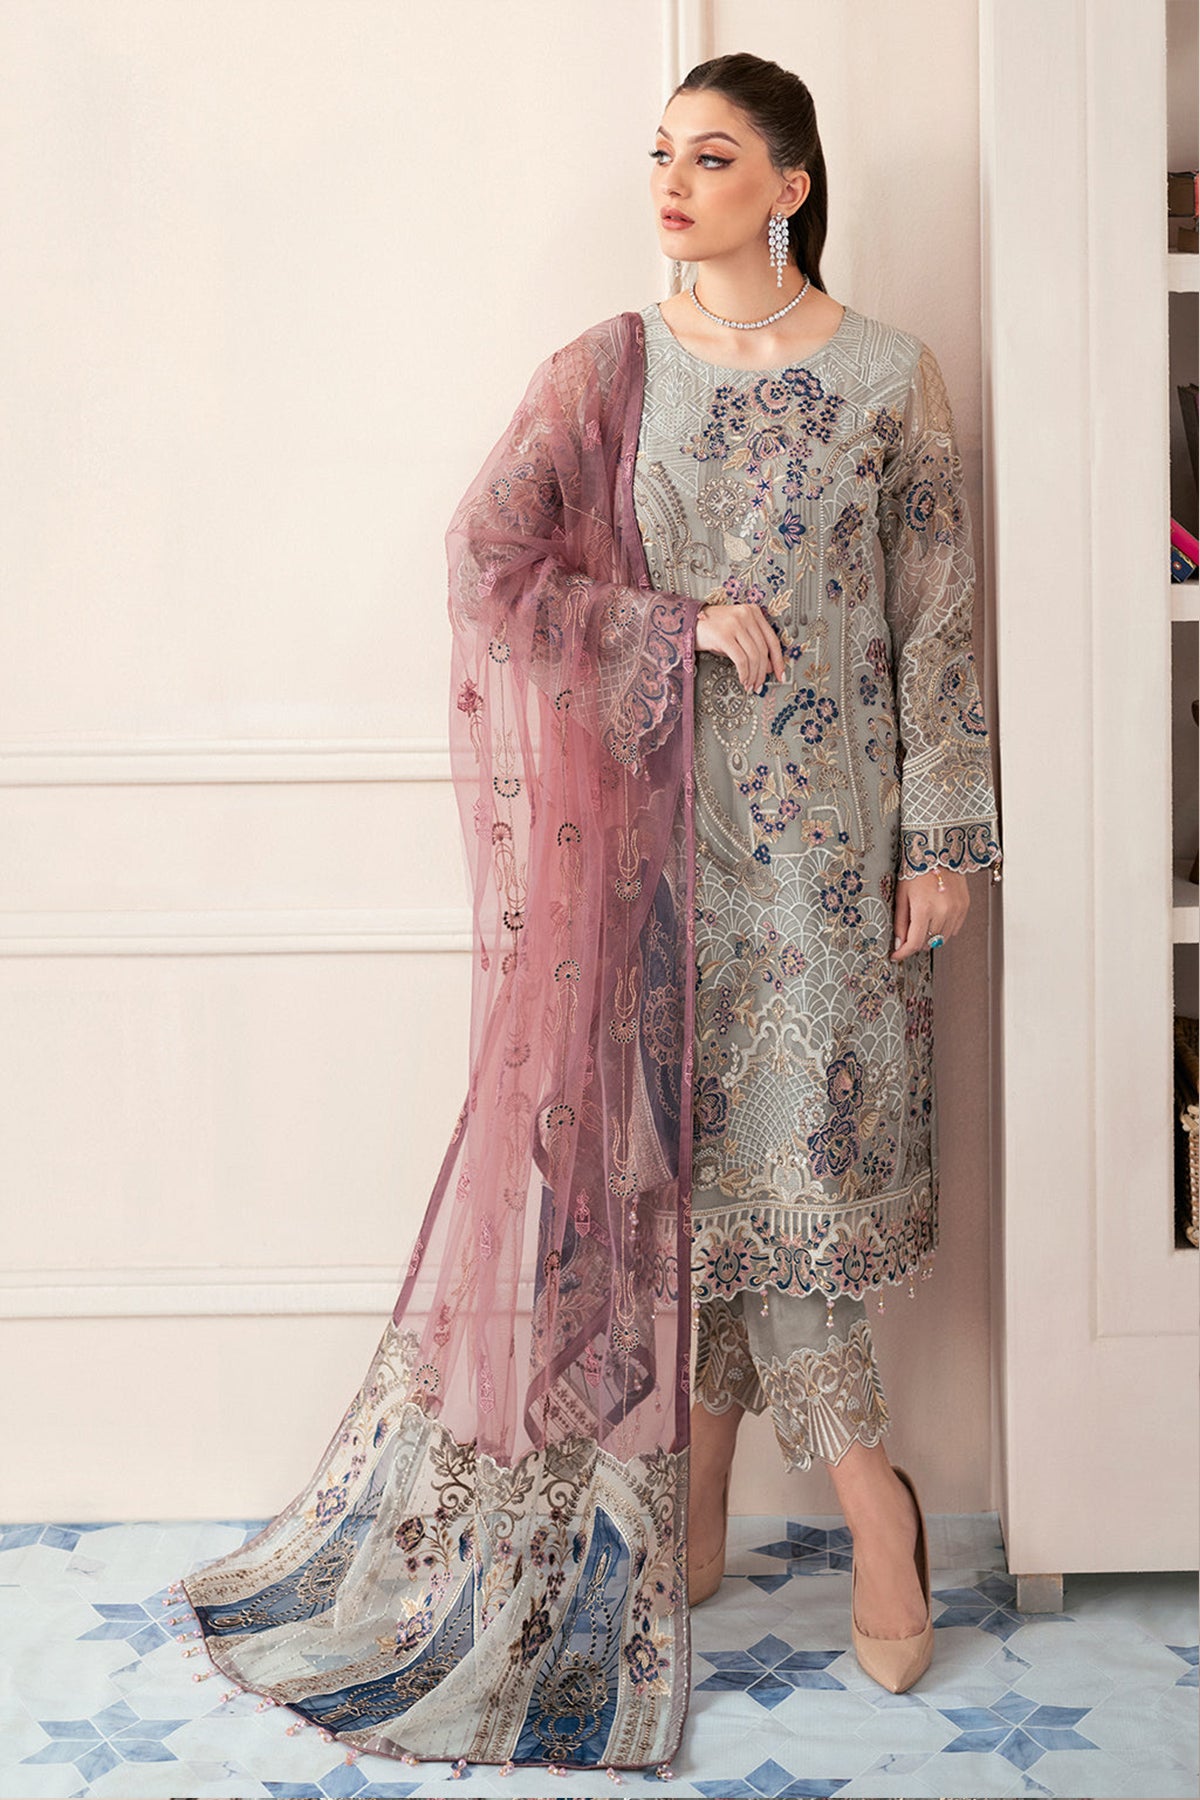 Latest Pakistani Dress Designs | New Dress Design 2021 in Pakistan